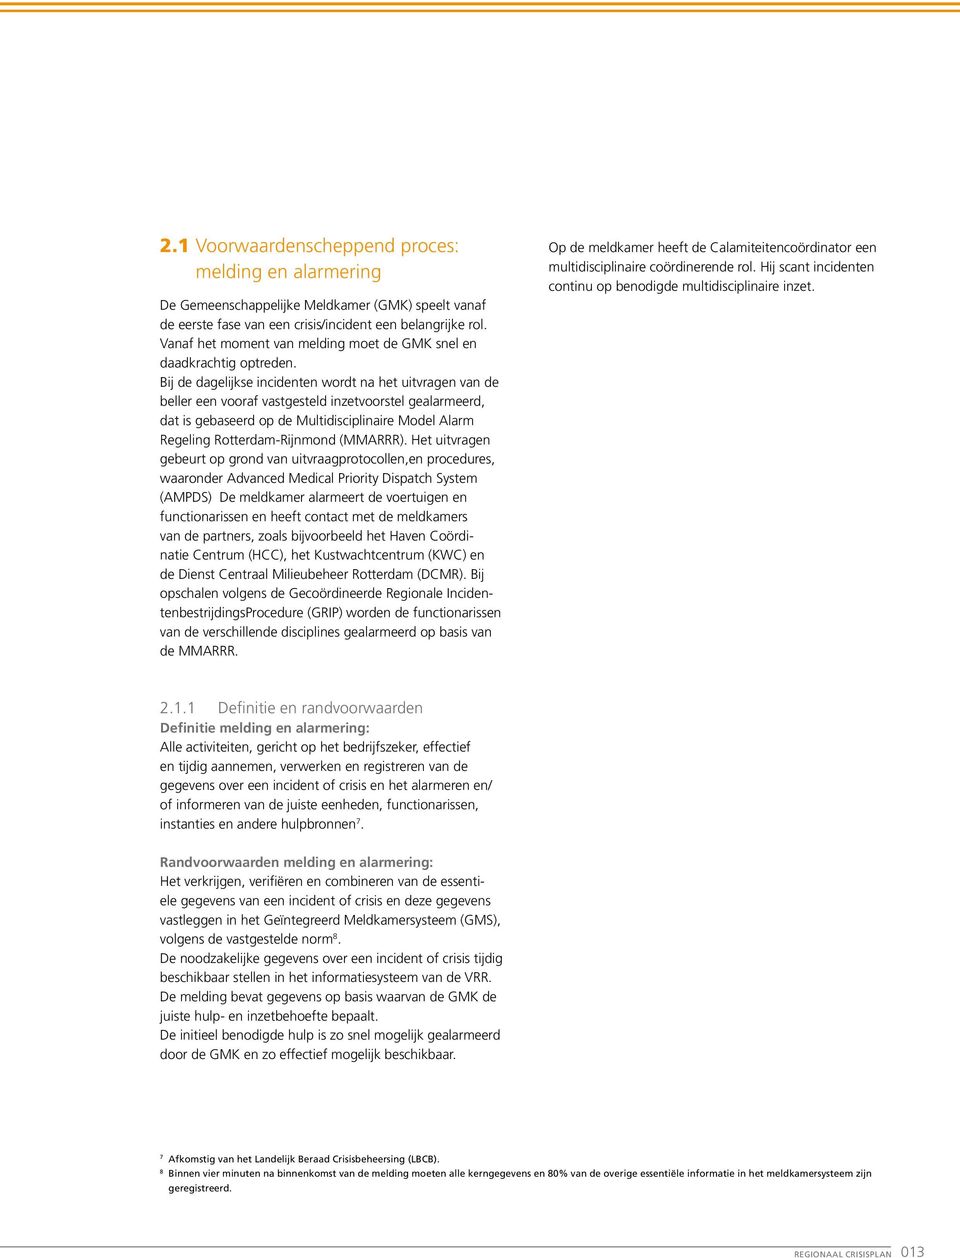 Bij de dagelijkse incidenten wordt na het uitvragen van de beller een vooraf vastgesteld inzetvoorstel gealarmeerd, dat is gebaseerd op de Multidisciplinaire Model Alarm Regeling Rotterdam-Rijnmond